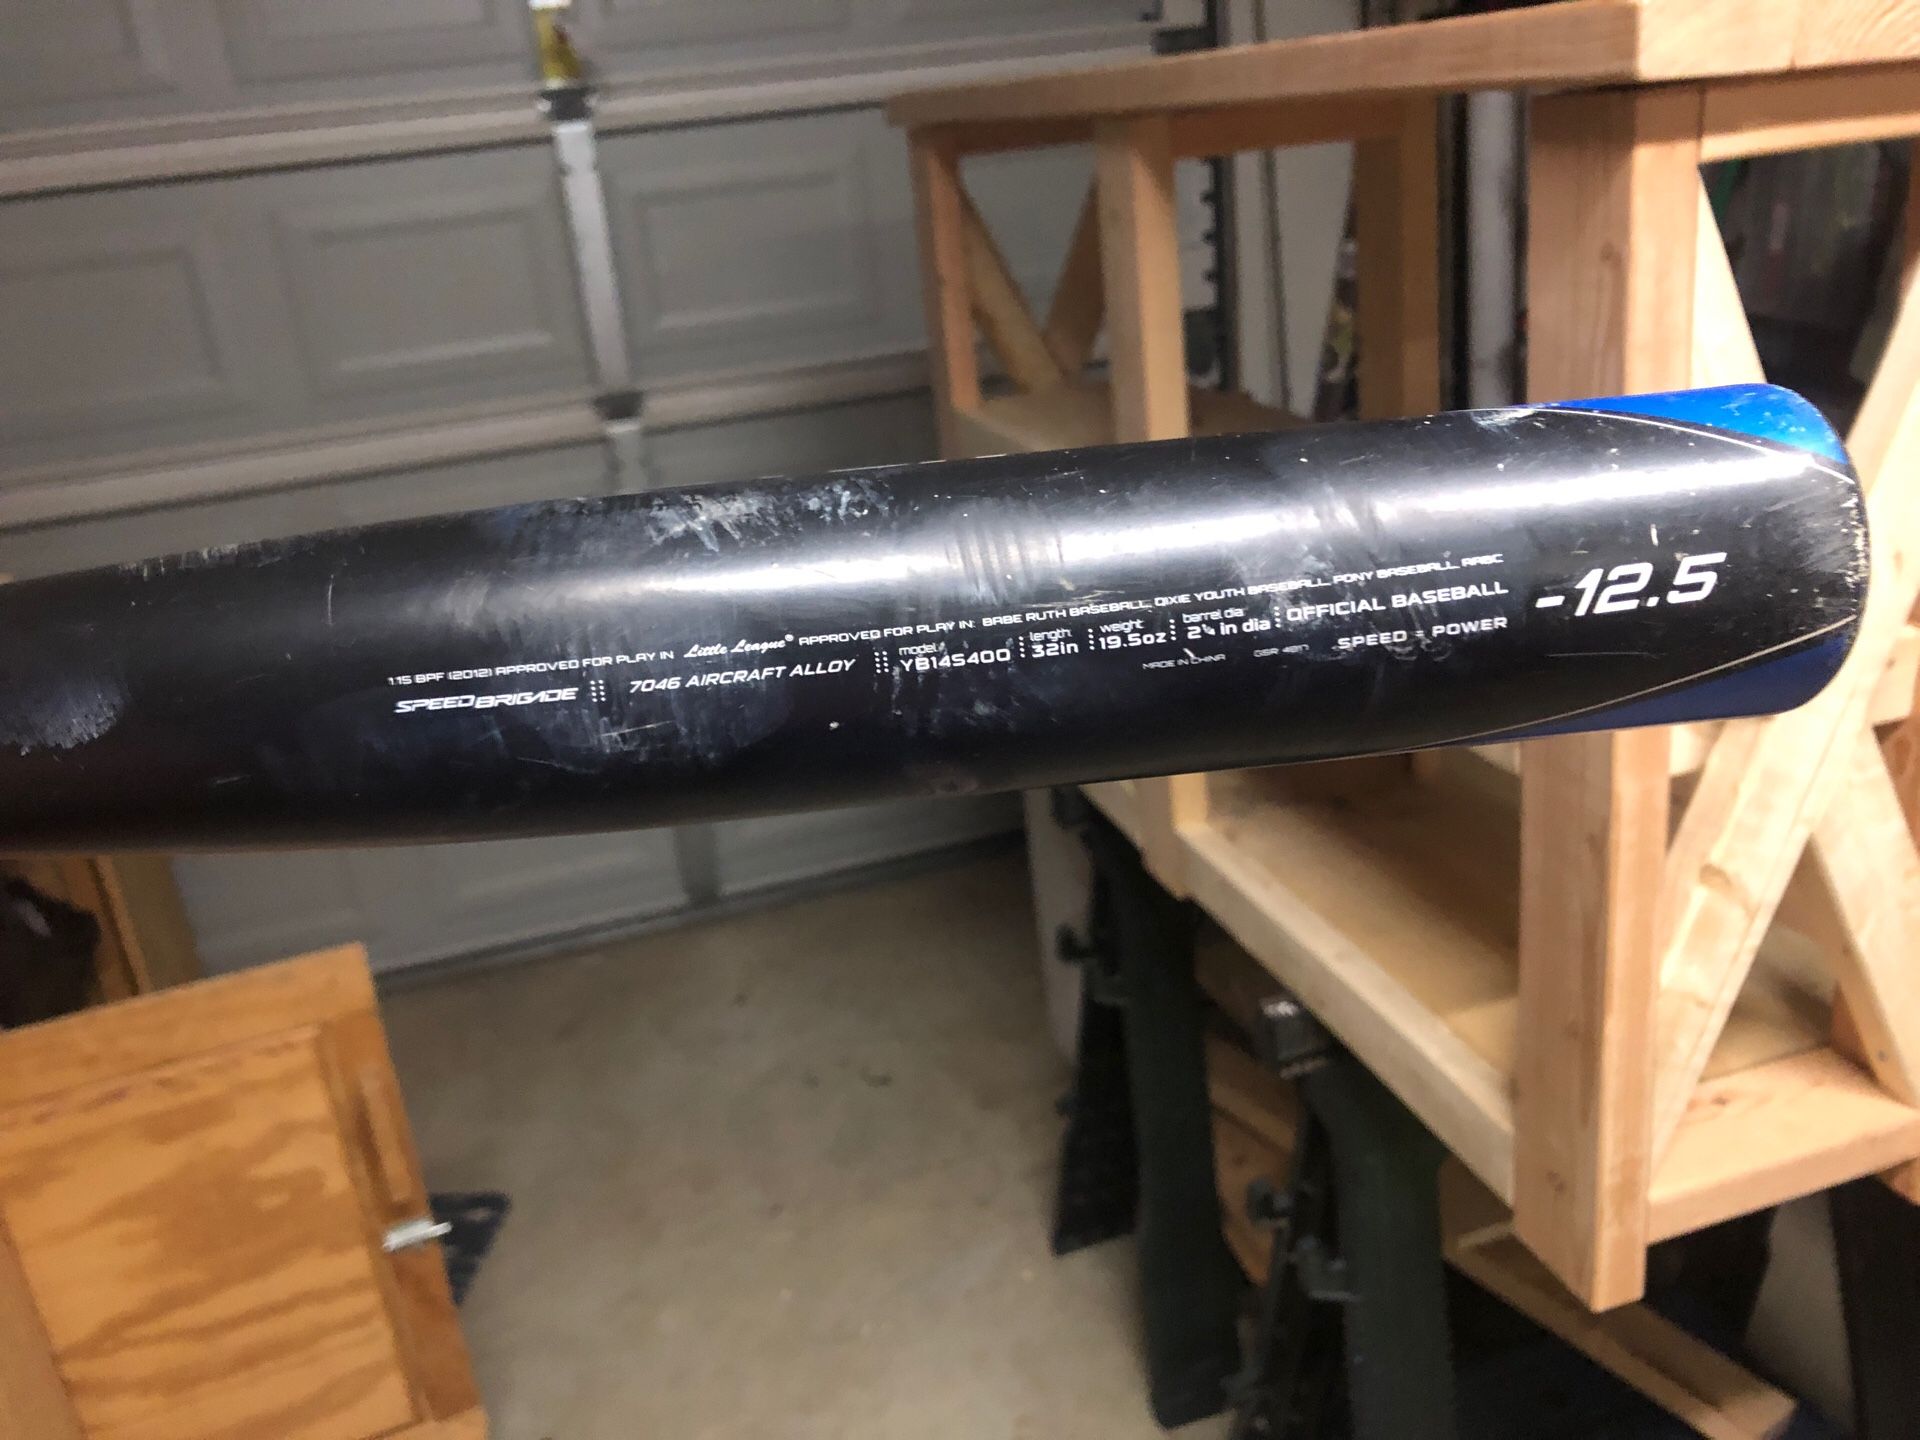 Easton youth baseball bat -12.5